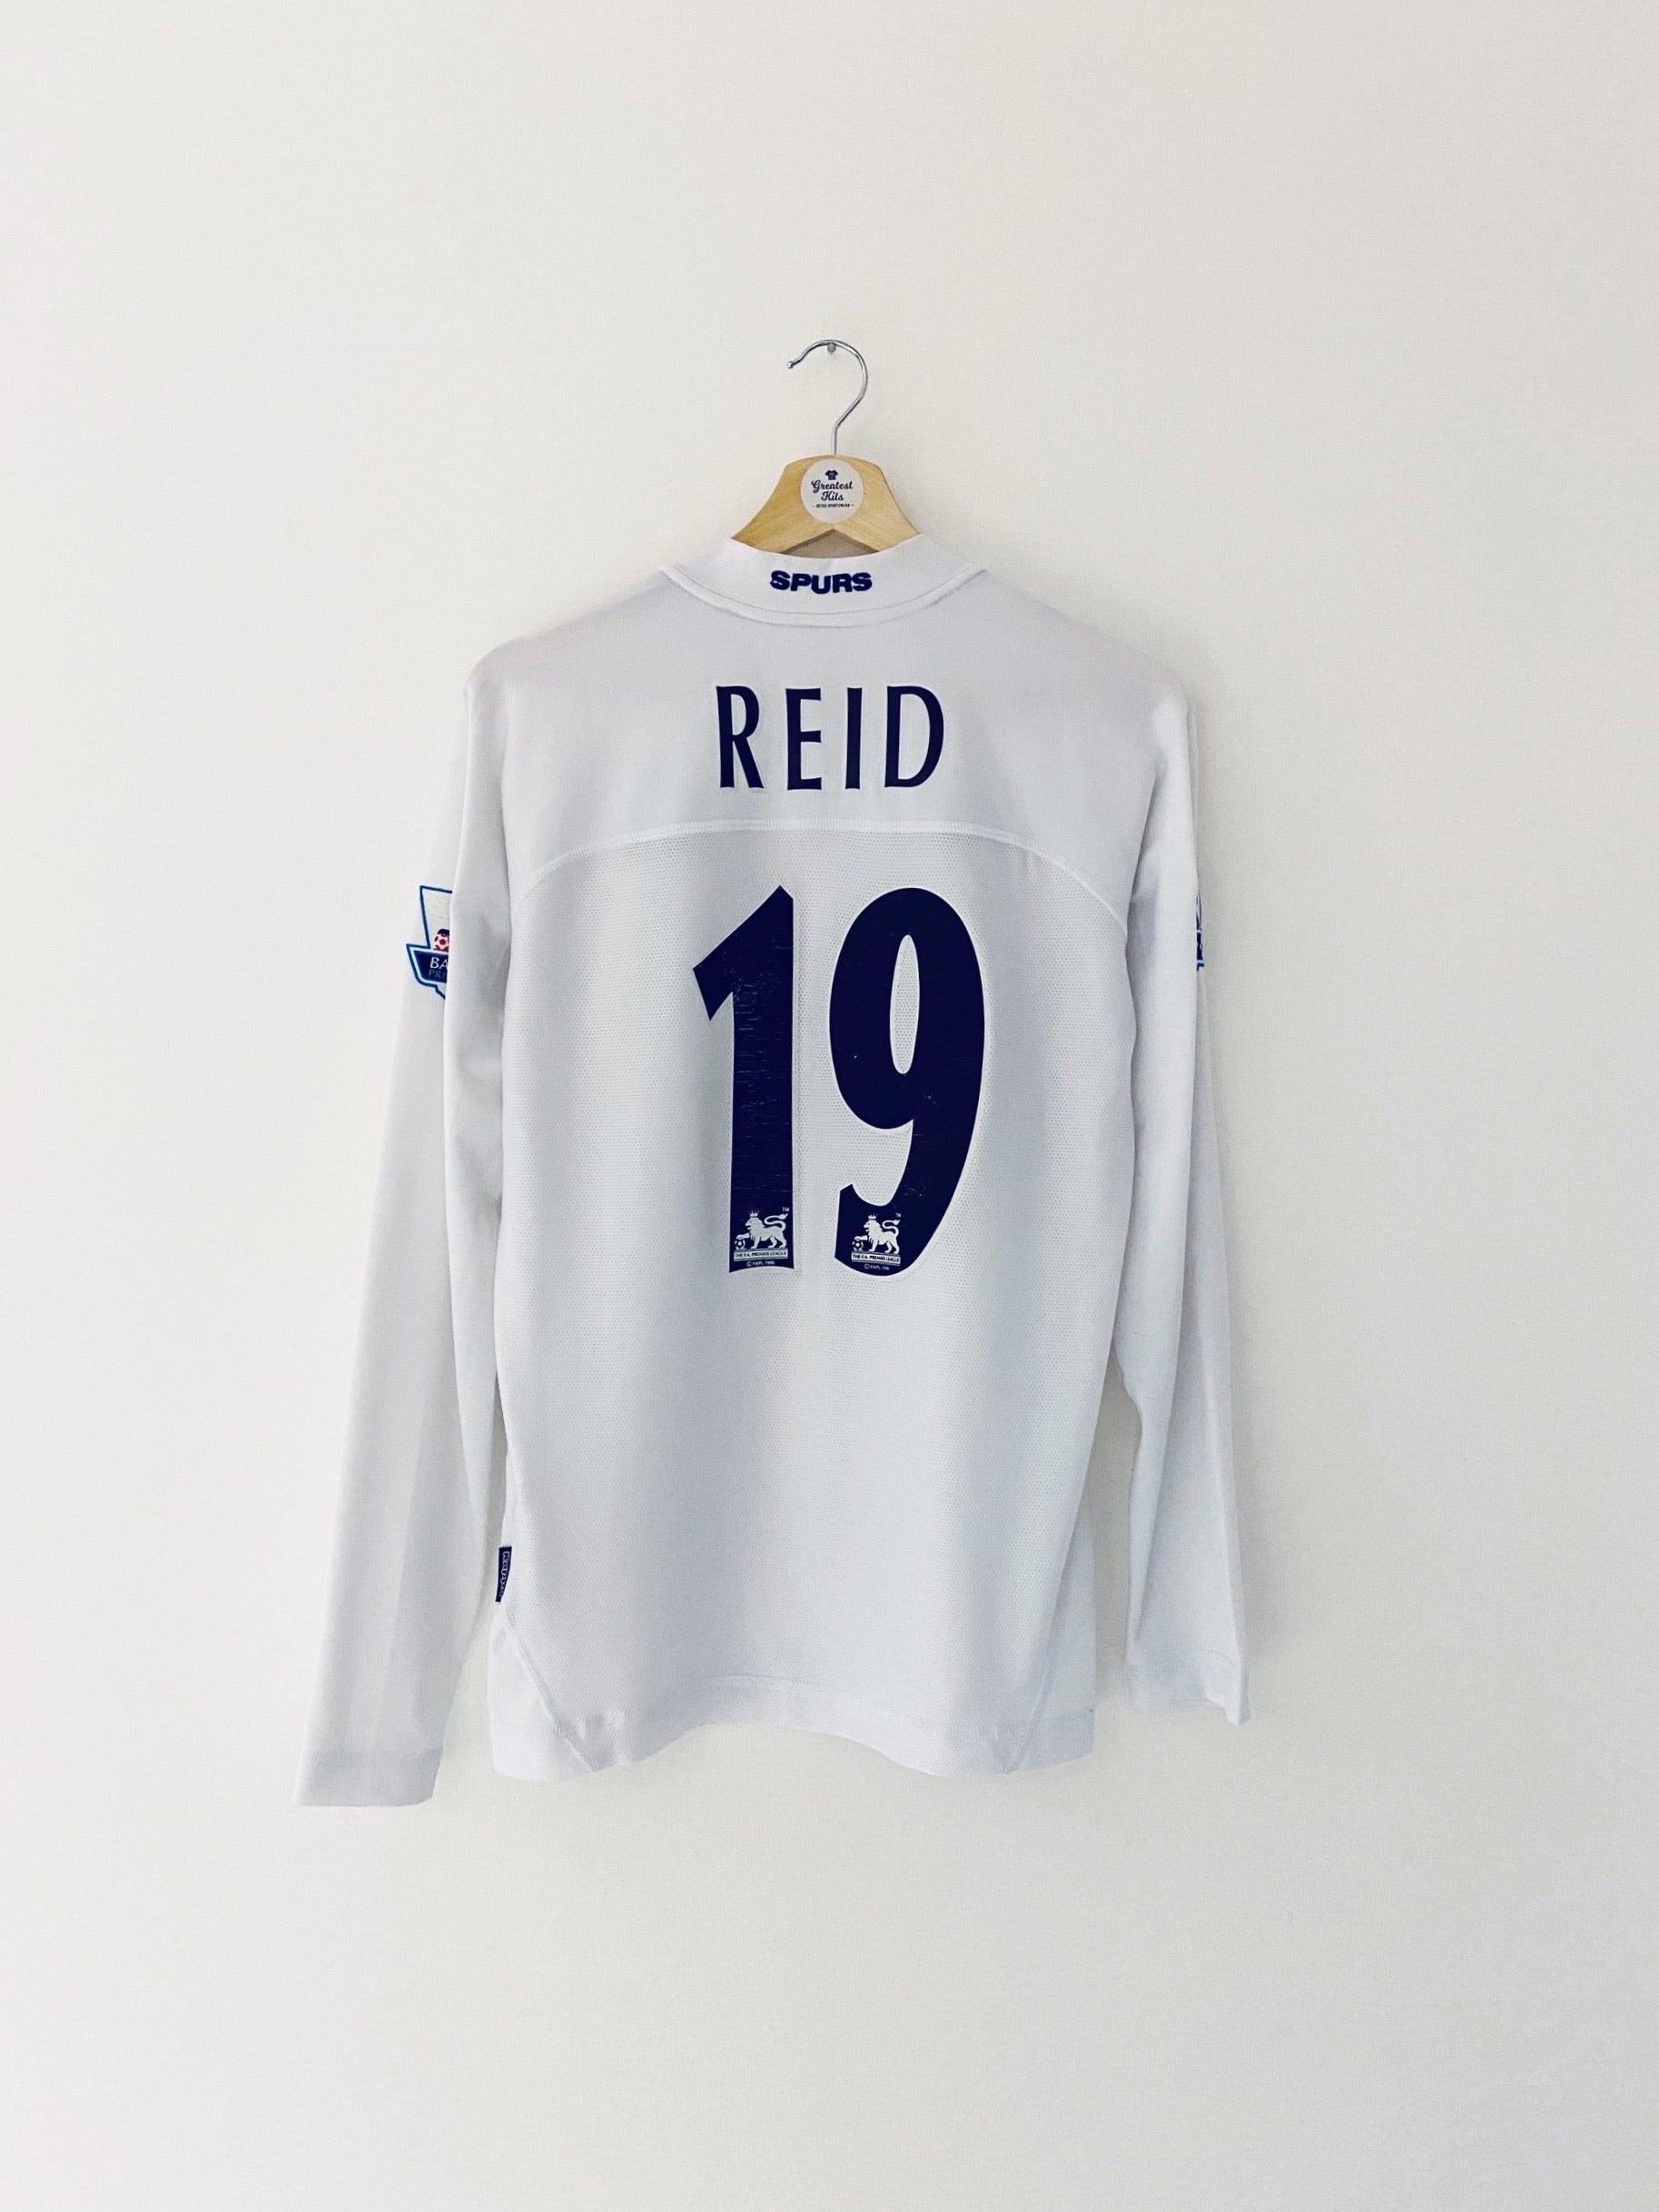 2004/05 Tottenham Hotspur Camiseta local L/S Reid #19 (M) 7.5/10